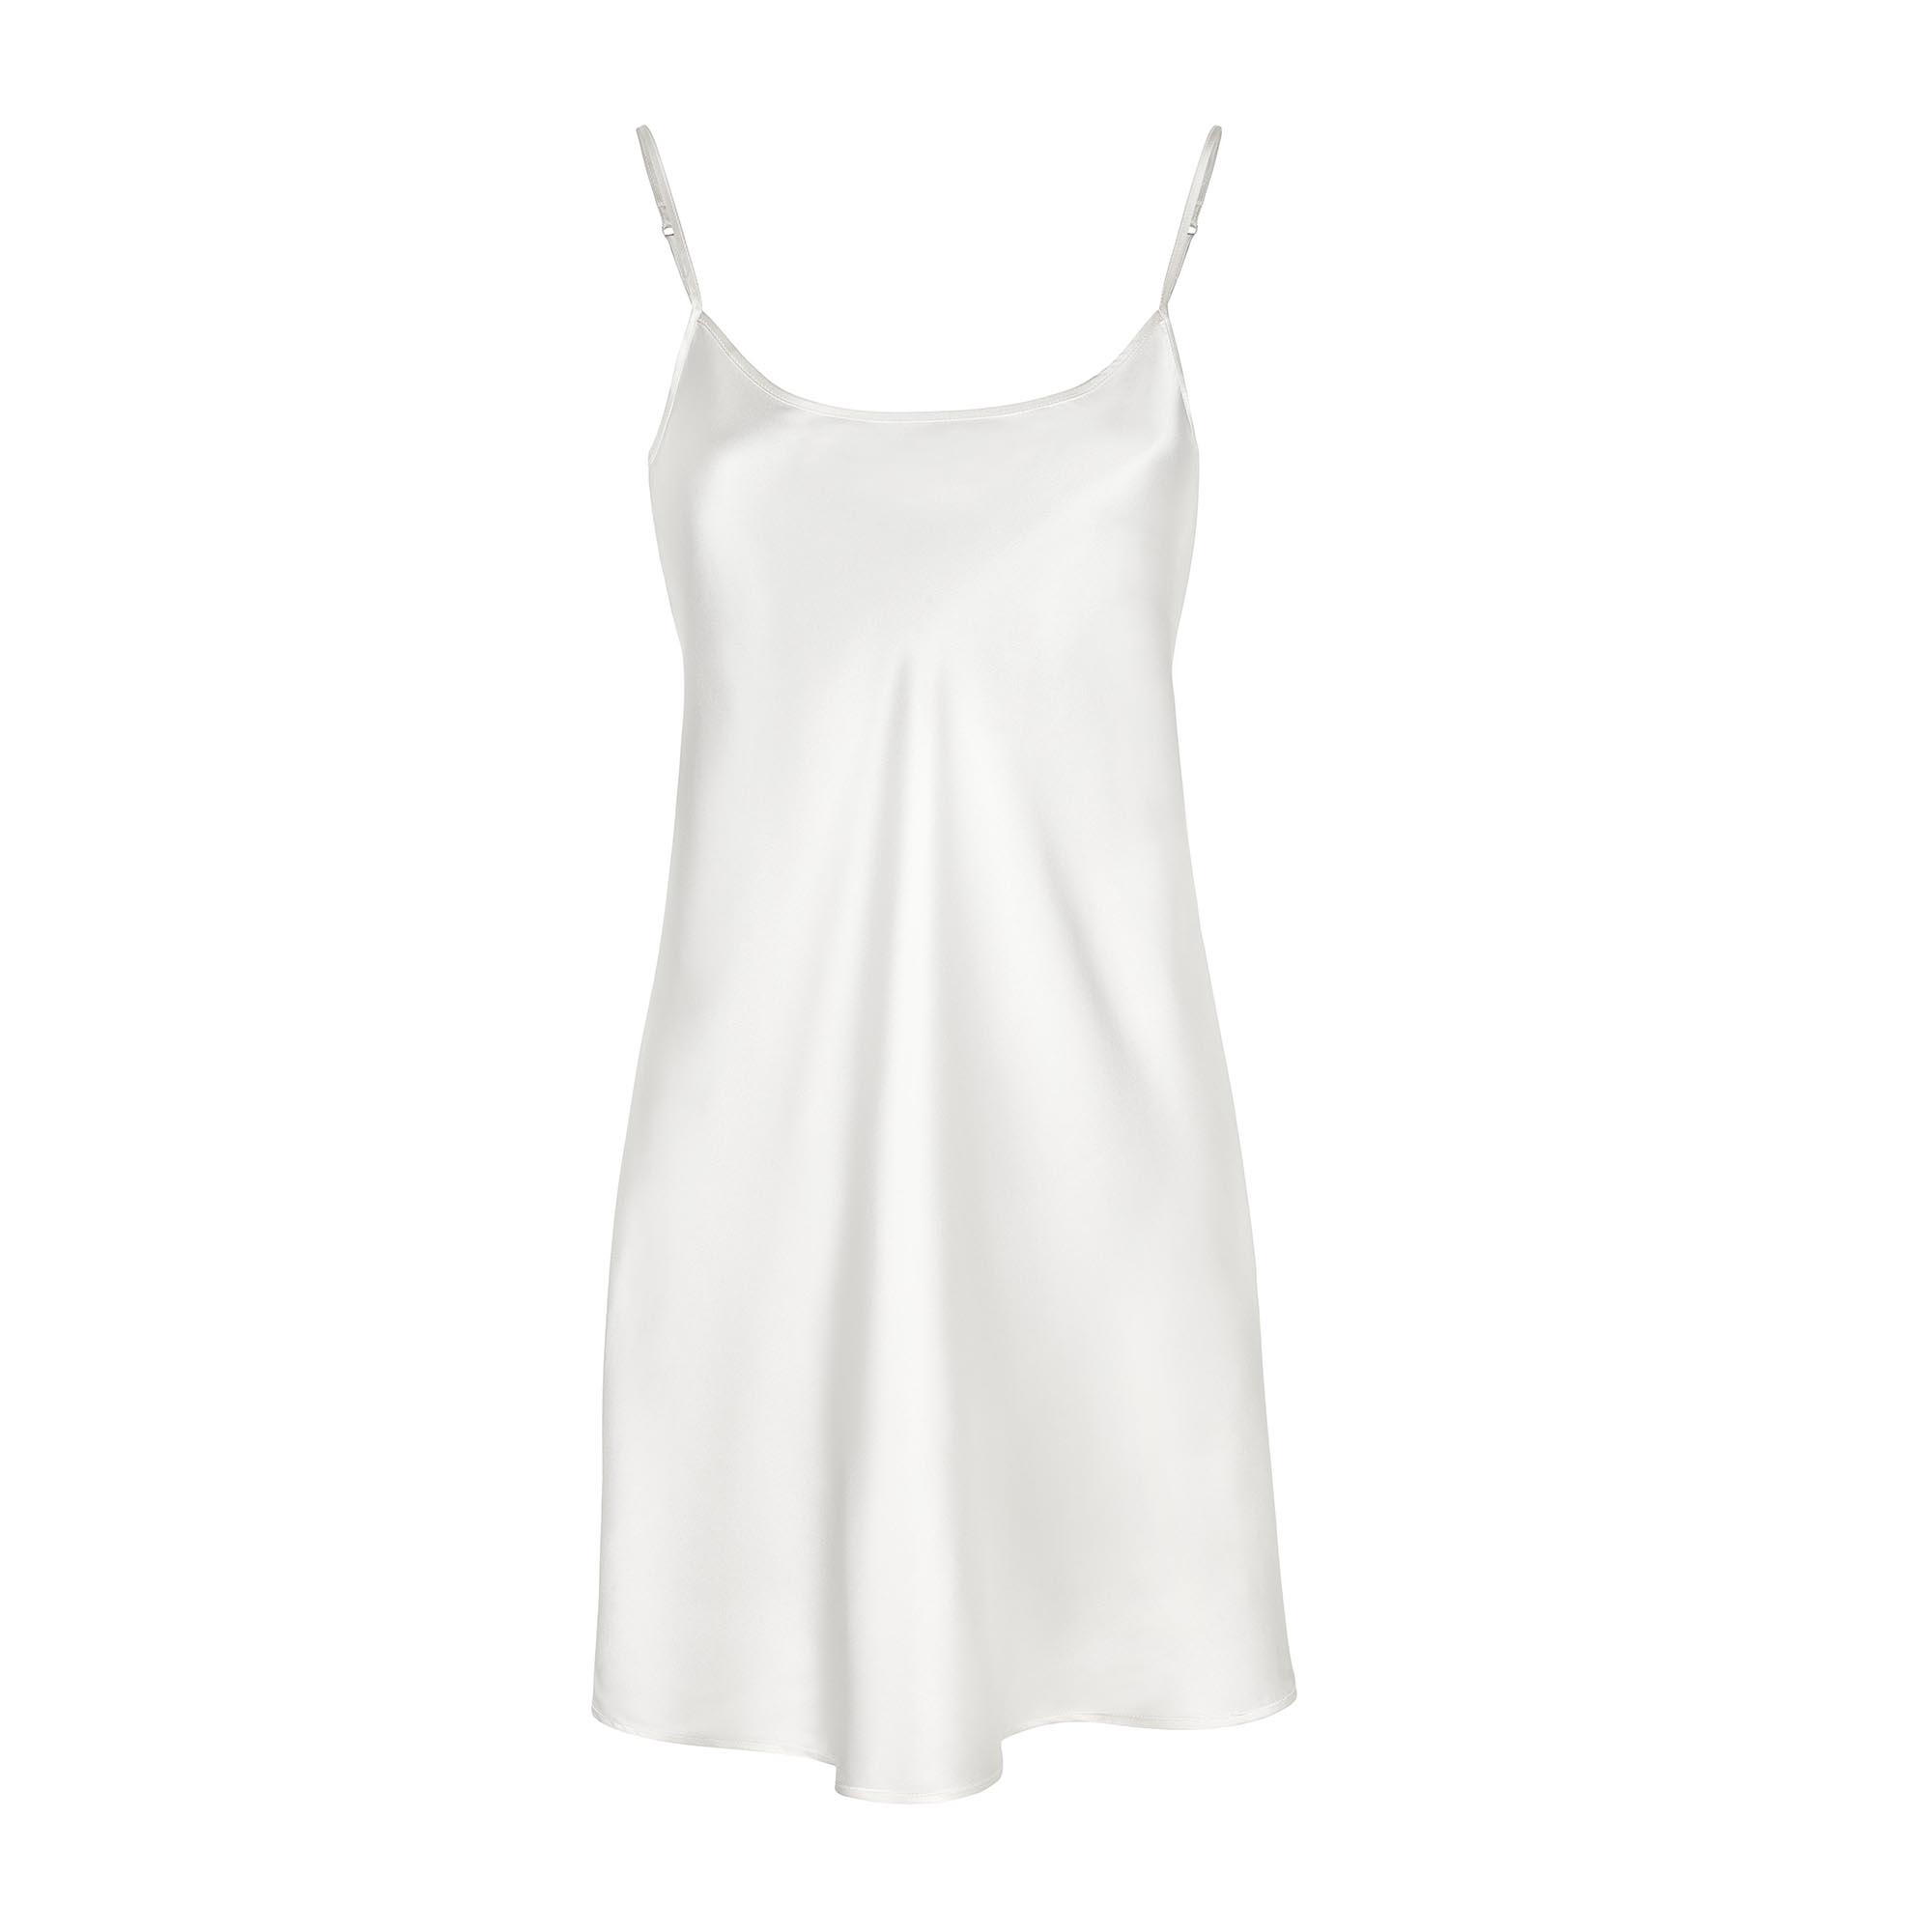 Ночная сорочка Анжелика цвет: Белый (50)